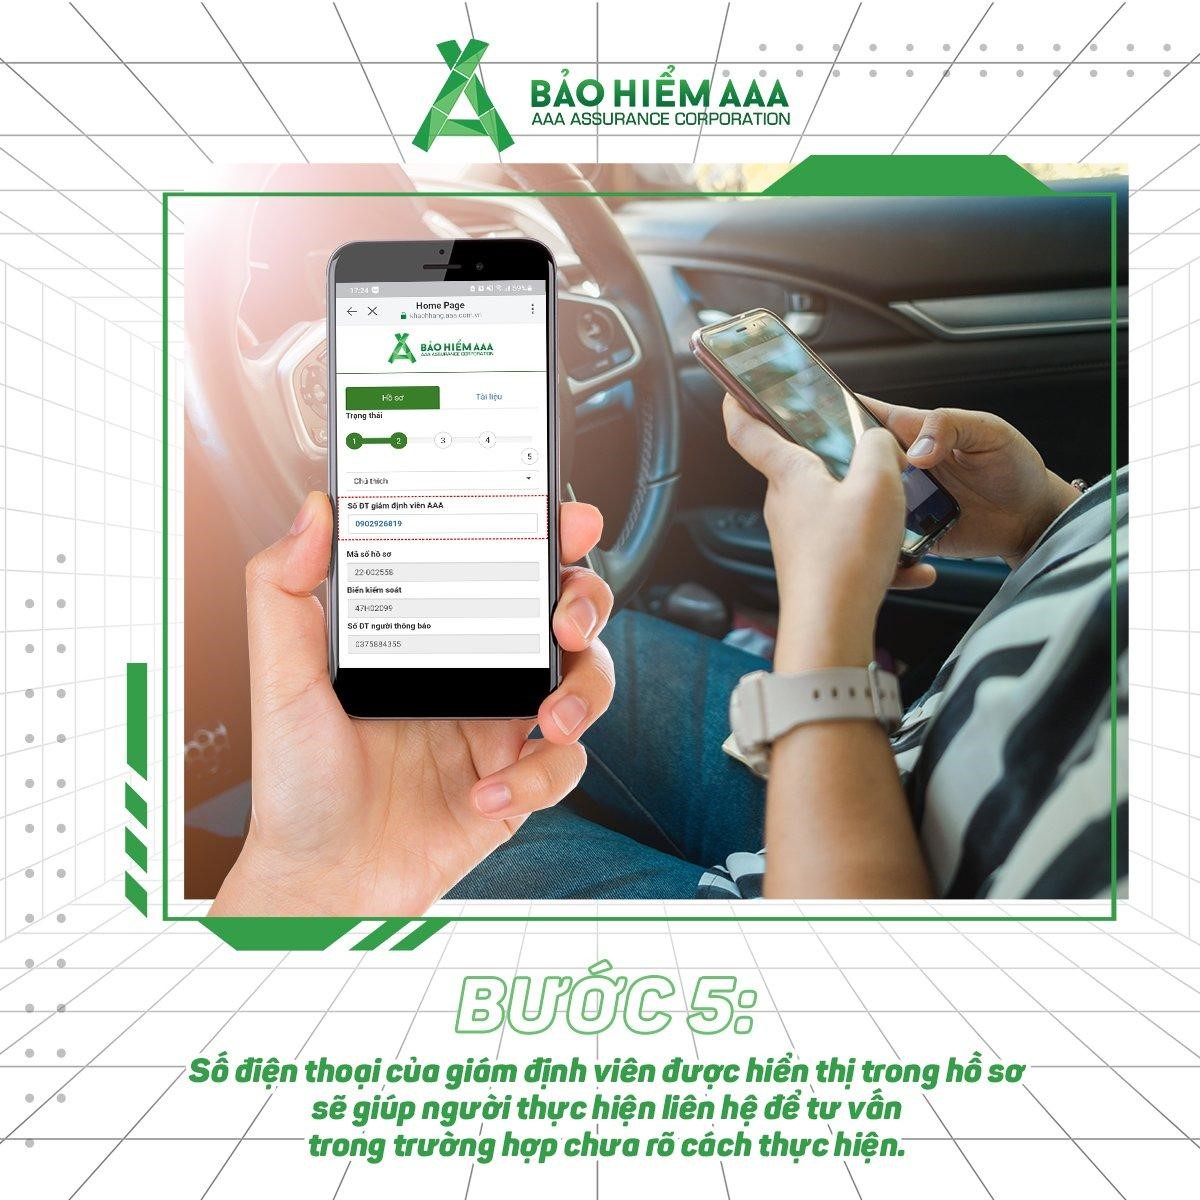 Bảo hiểm AAA kích hoạt tính năng khai báo tai nạn online, rút ngắn thời gian và quy trình giám định bồi thường đối với xe cơ giới - ảnh 6